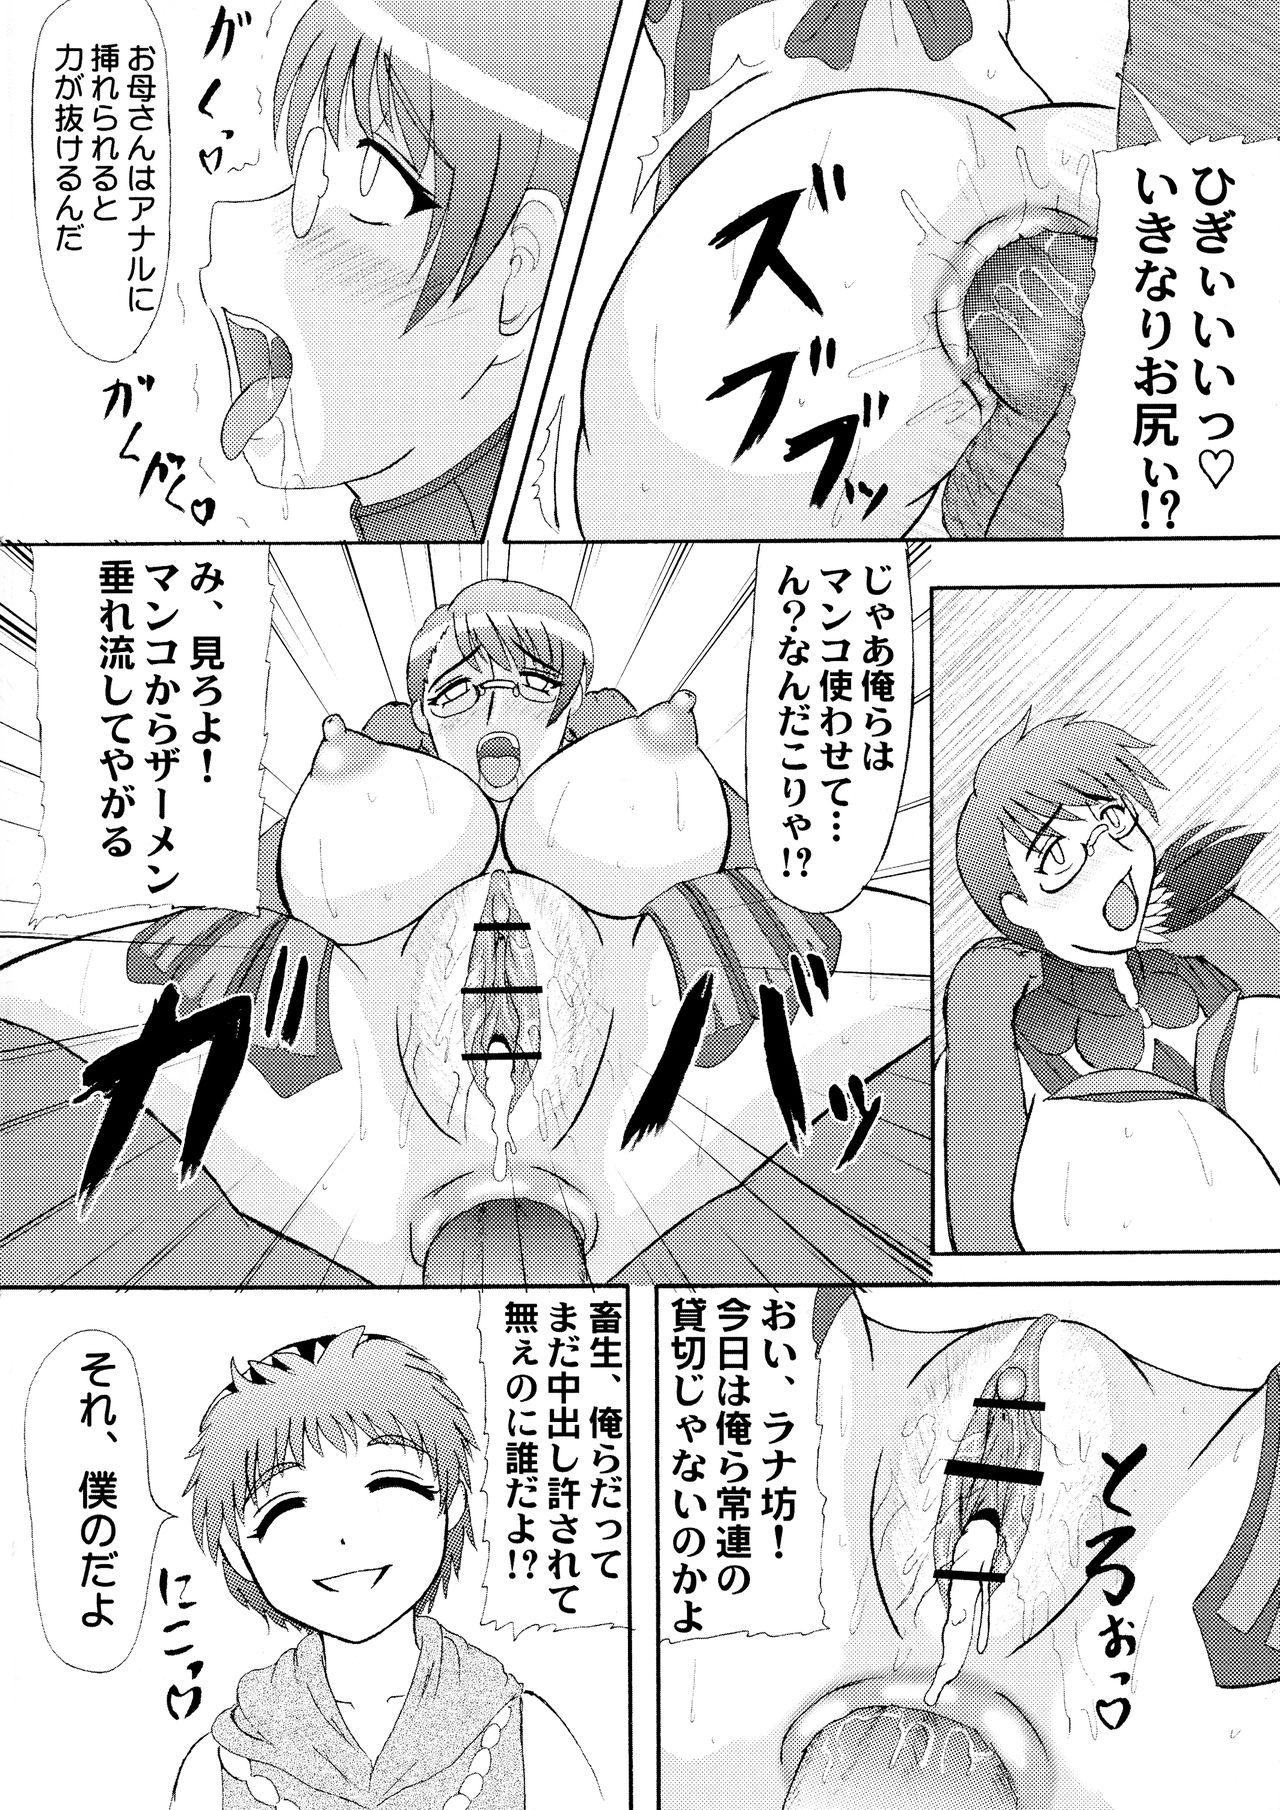 Spy Seijuku Shita Miryoku - Queens blade Step - Page 7